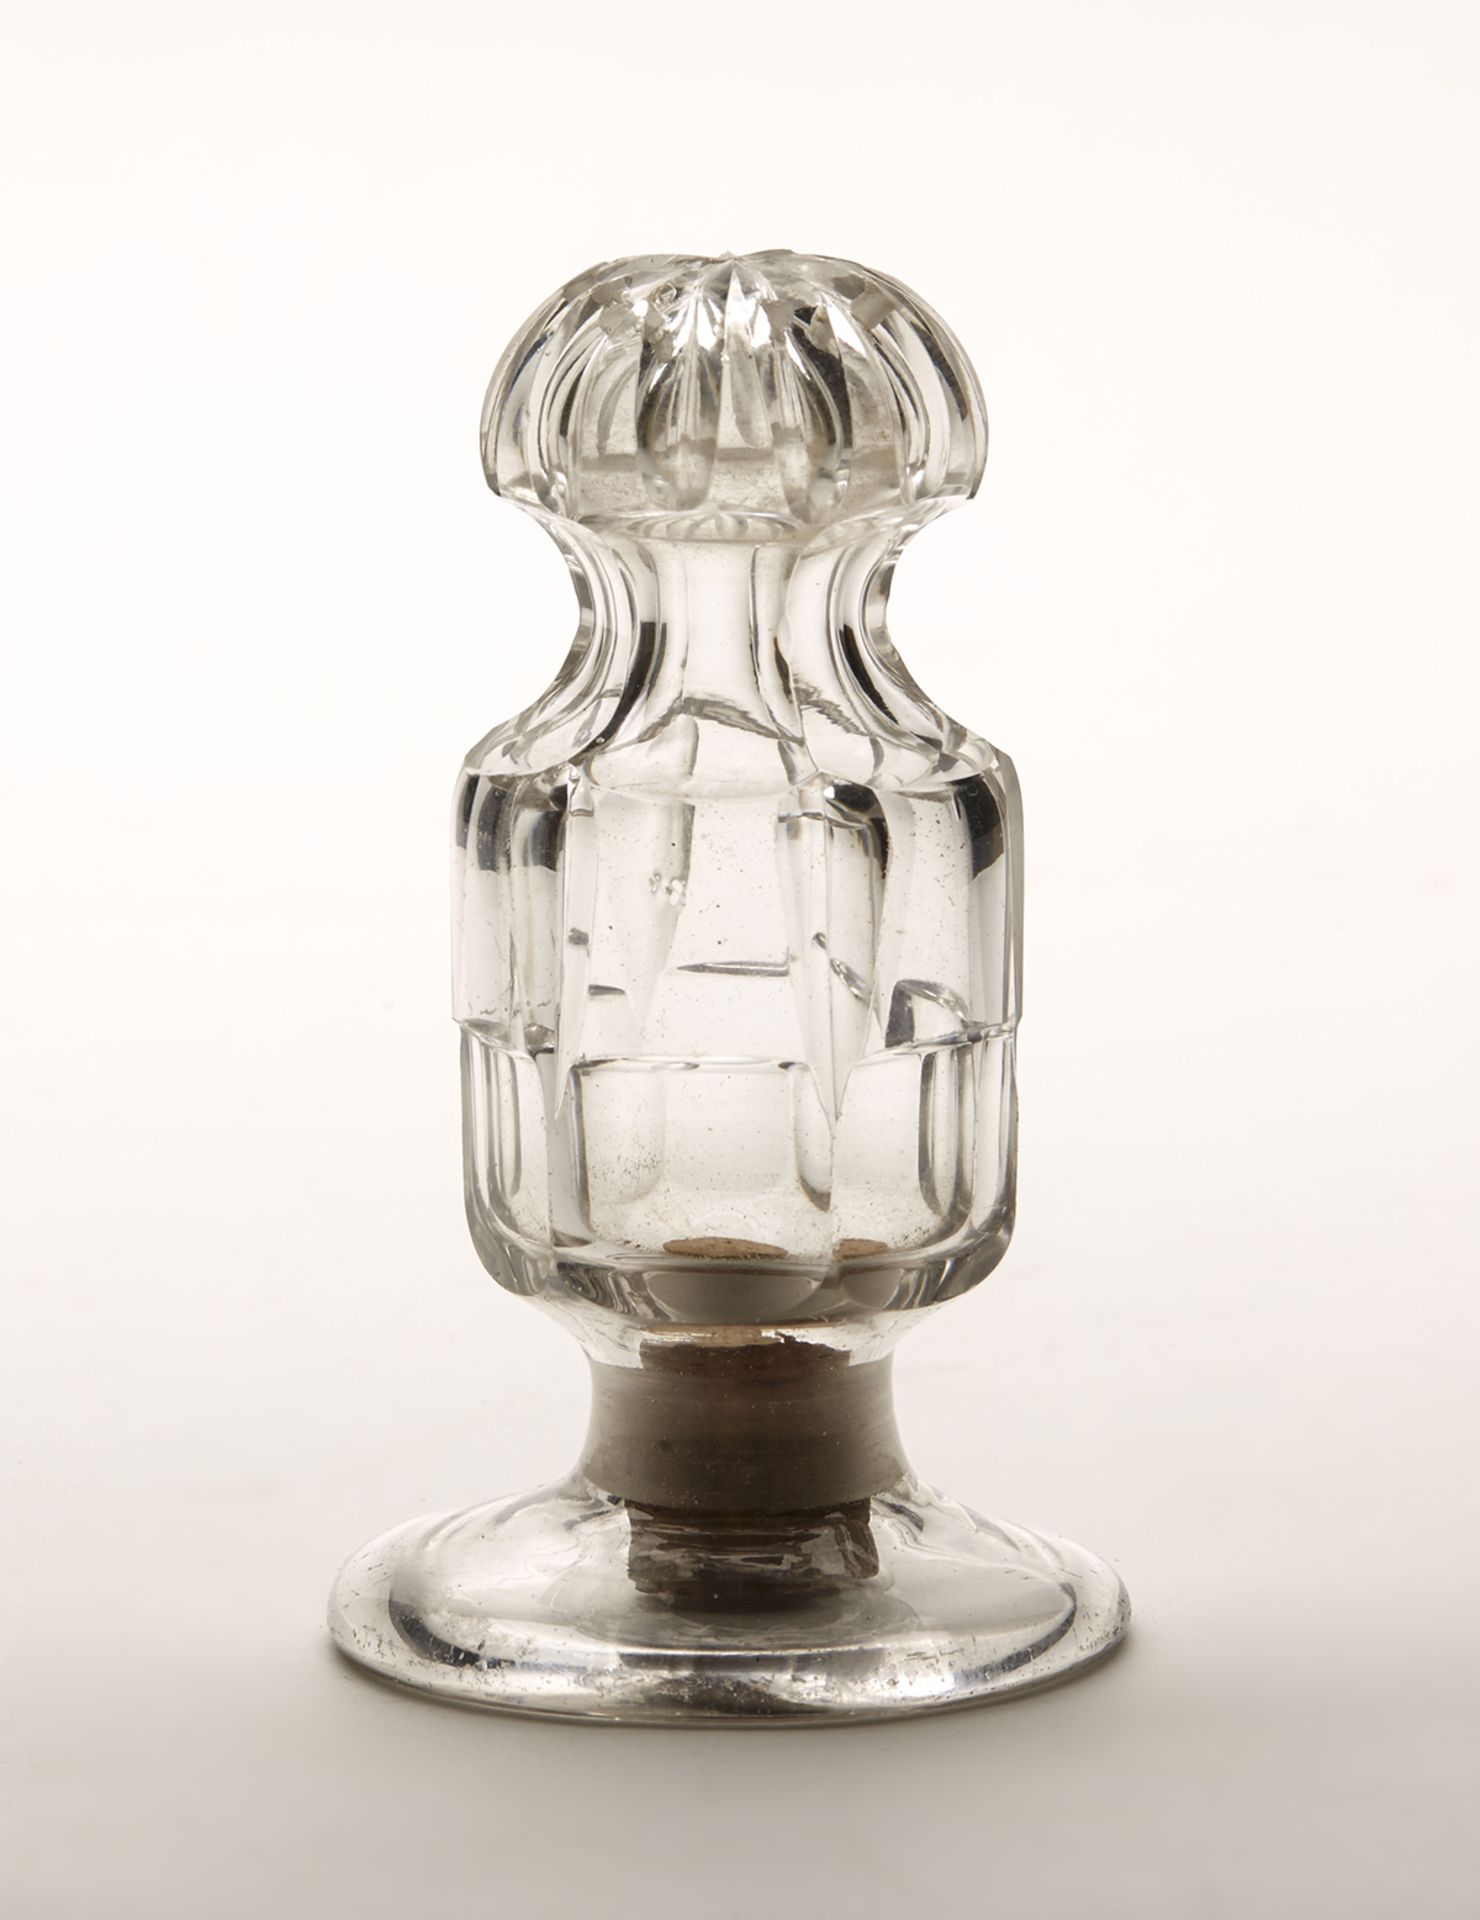 ANTIQUE GEORGIAN CUT GLASS POUNCE POT c.1820